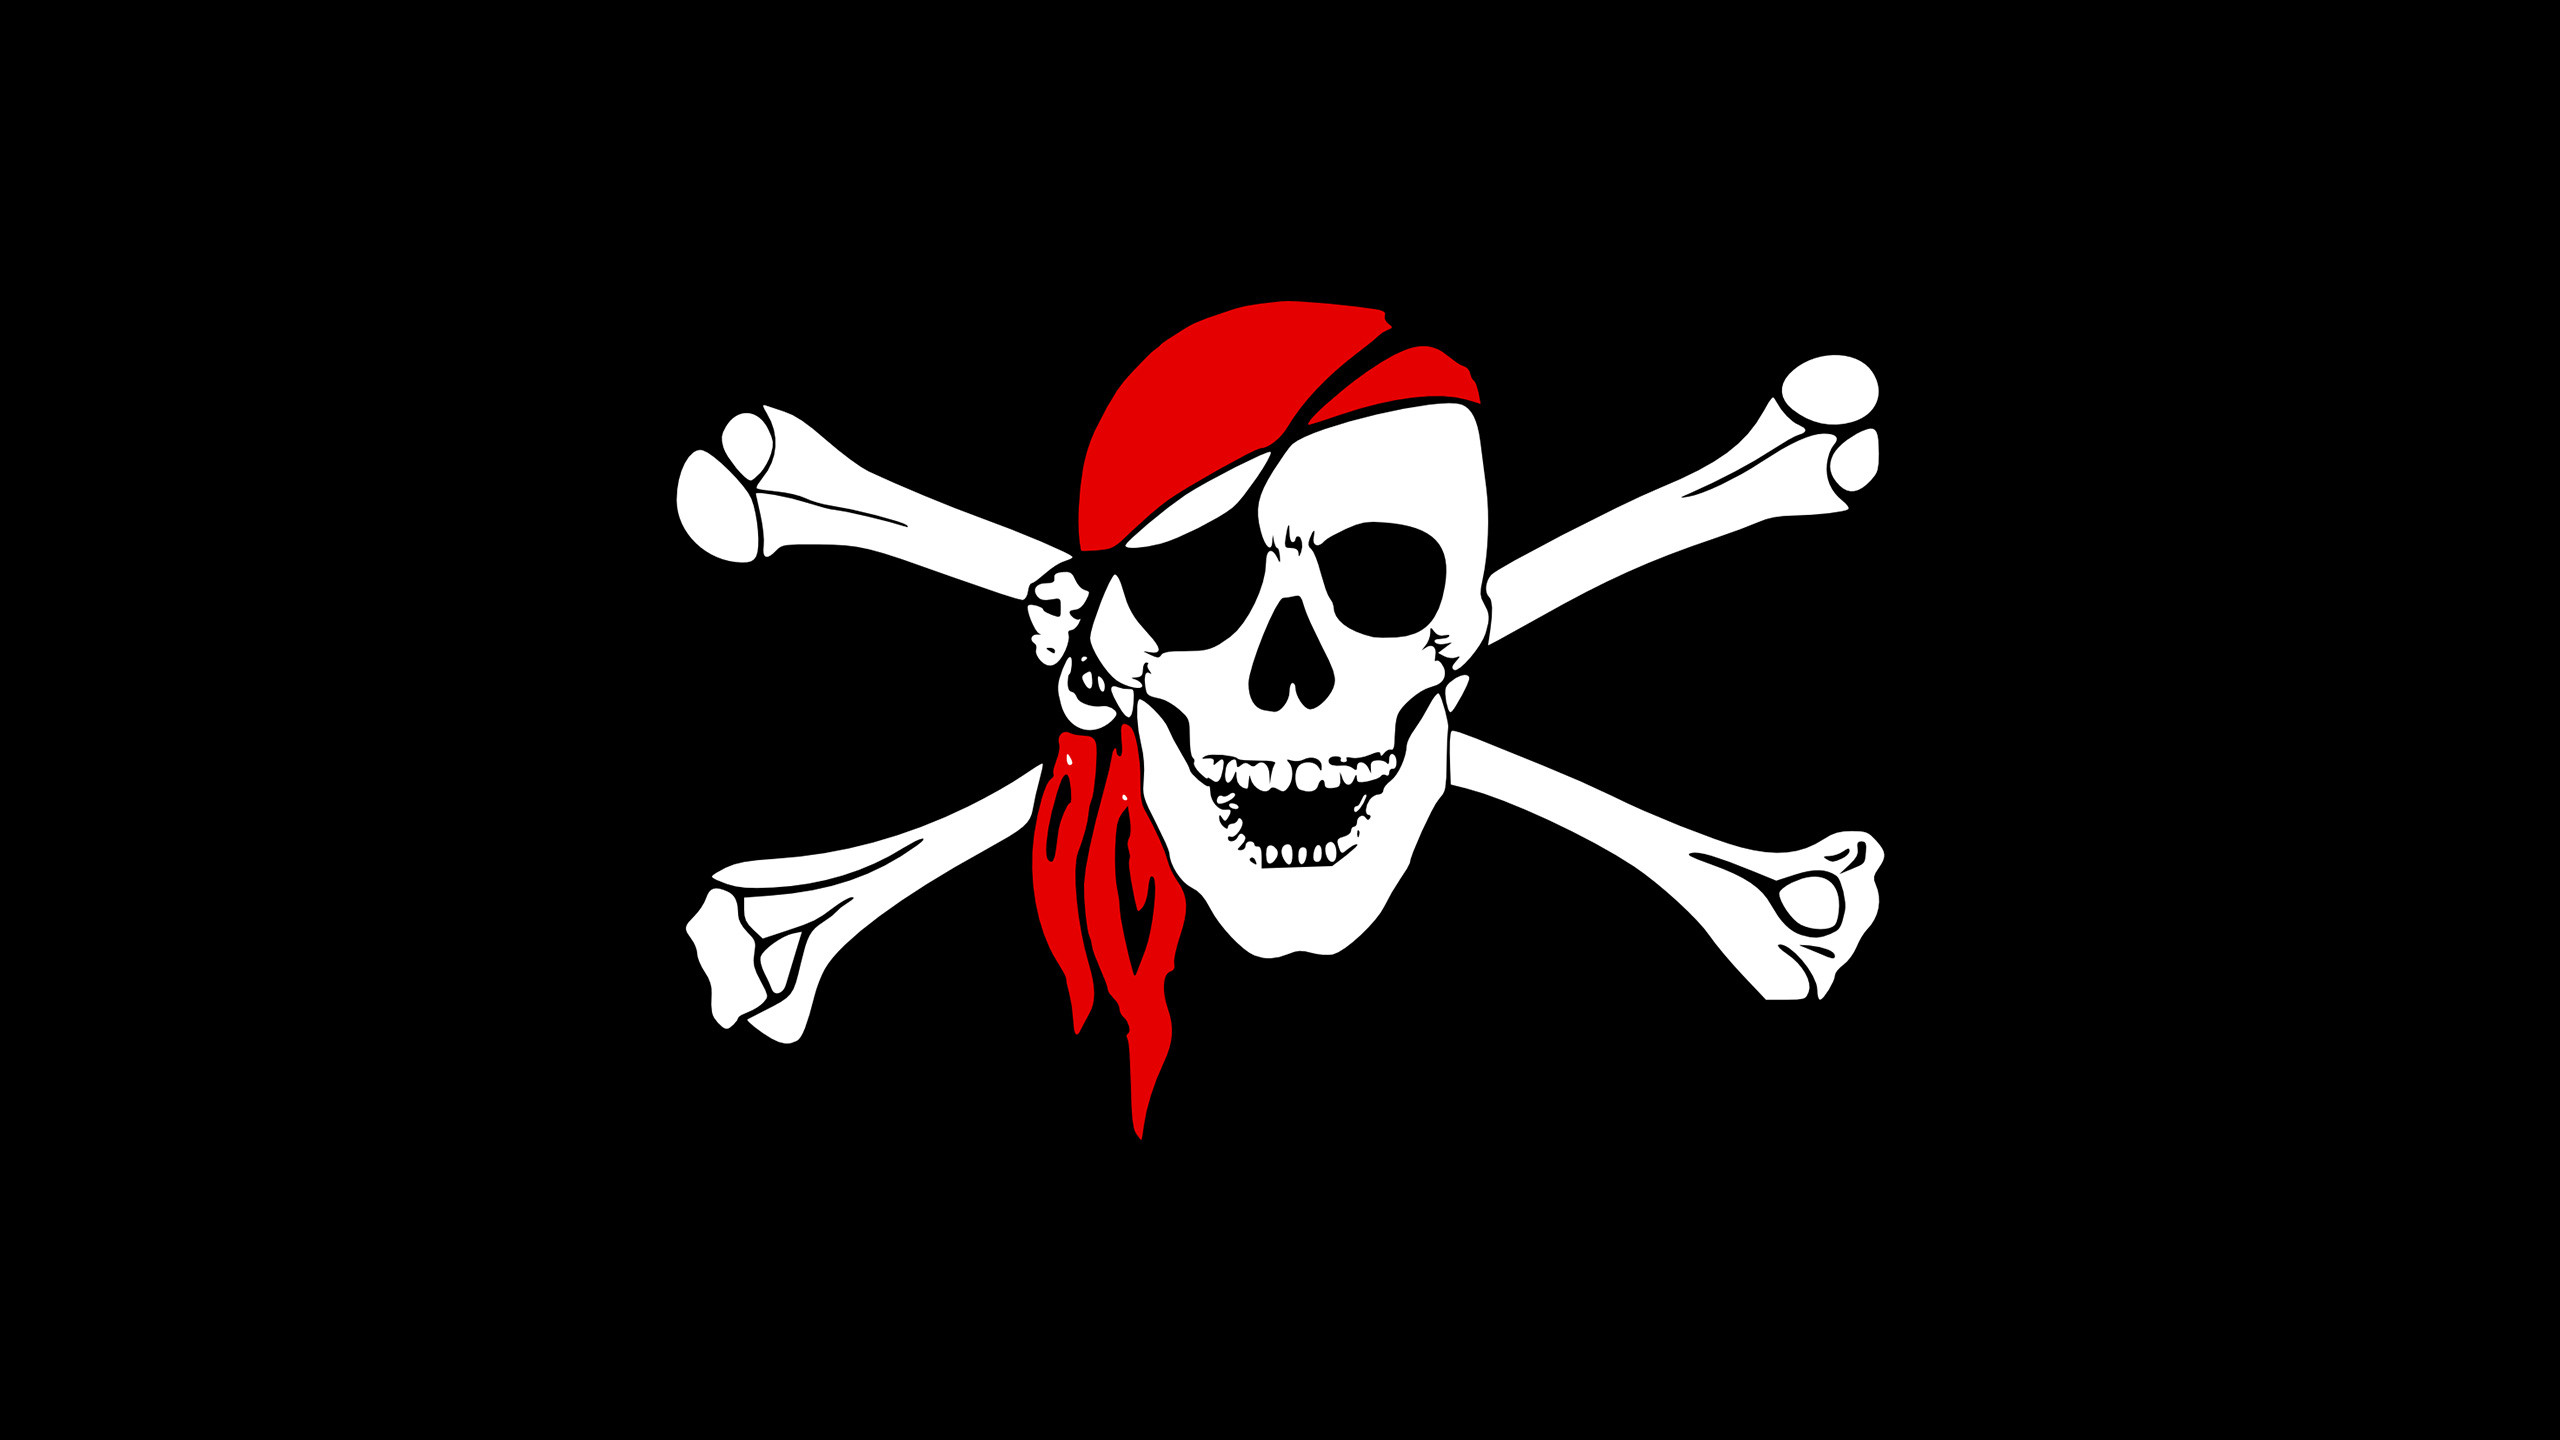 해적 깃발 벽지,뼈,두개골,깃발,삽화,폰트